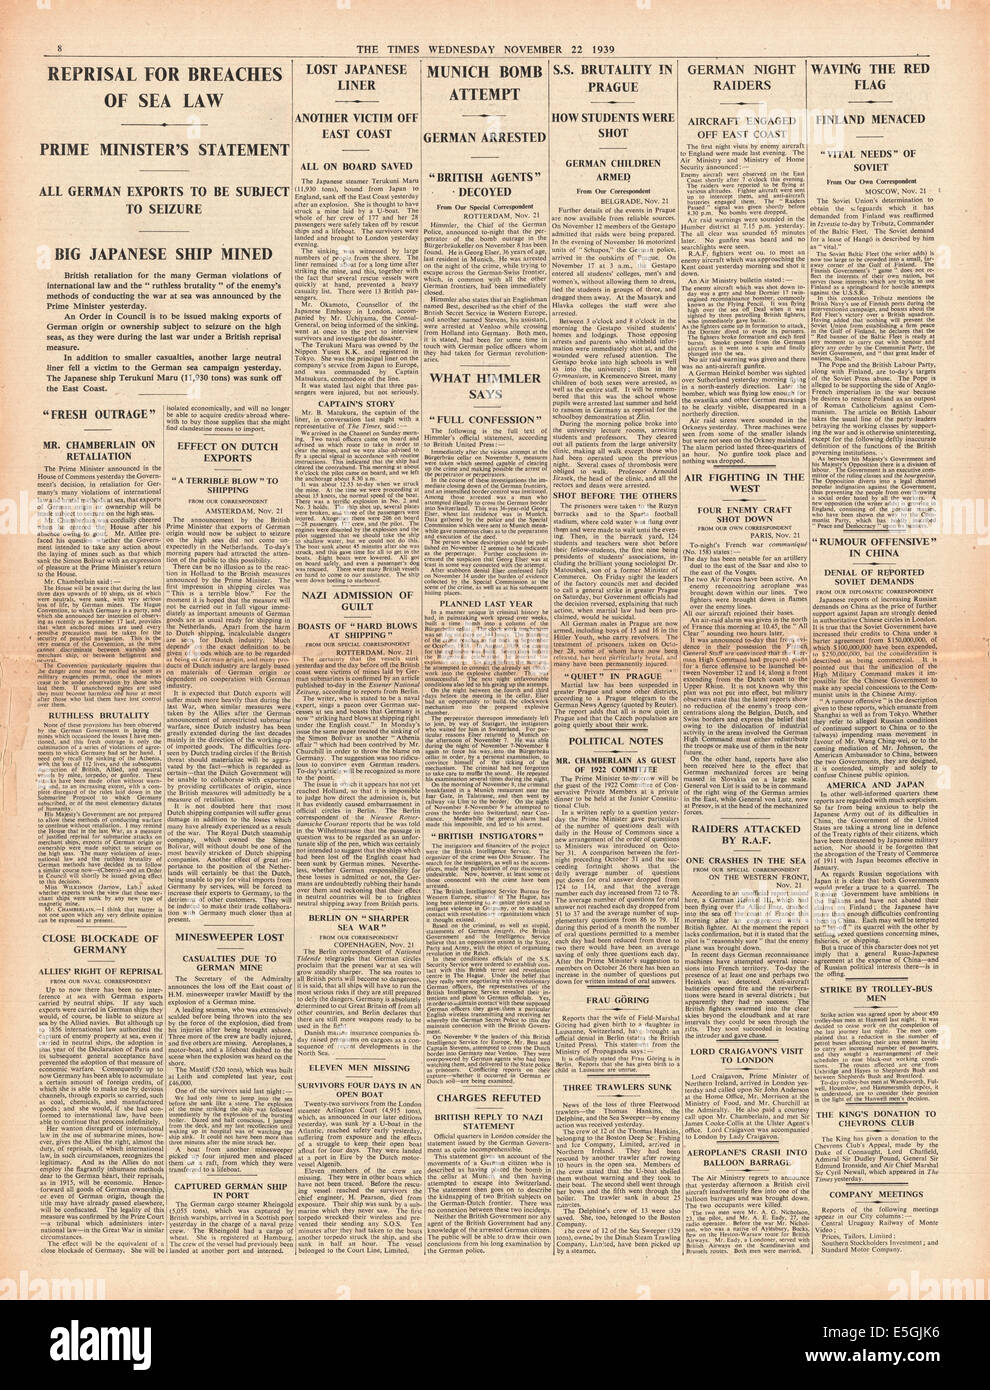 La fois la page 8 présentation de rapports de Terukuni Maru japonais après avoir frappé les puits de mine allemand, allemand des représailles dans Prague et arrestations après une tentative d'assassinat sur Hitler Asdolf Banque D'Images